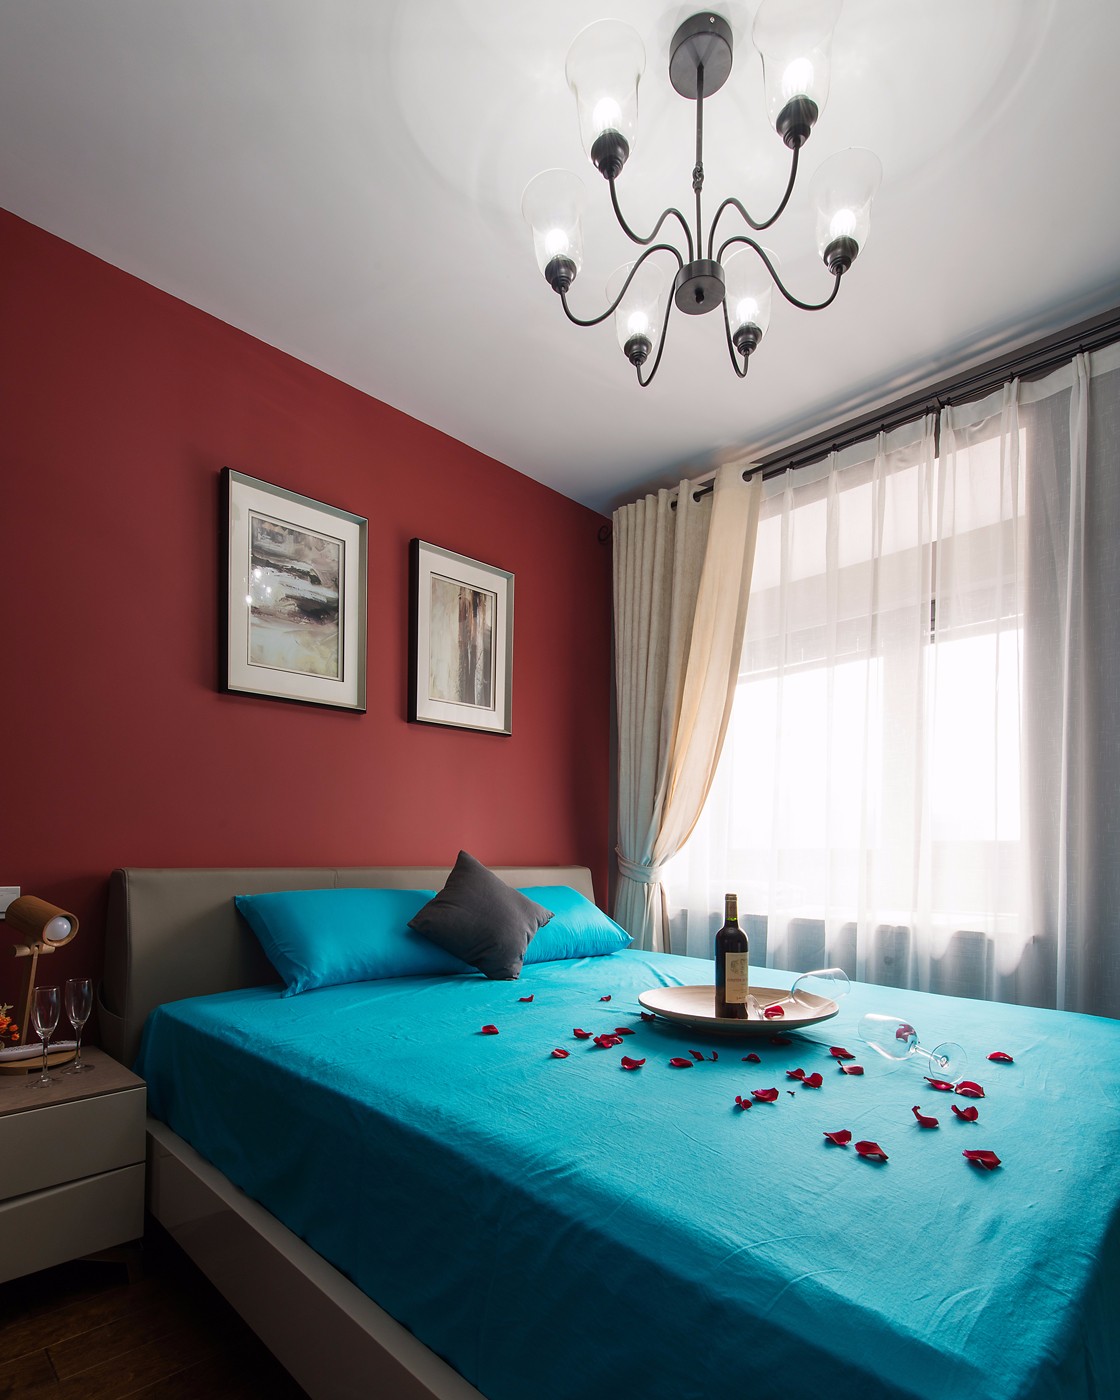 二居室装修,90平米装修,10-15万装修,卧室,混搭风格,蓝色,红色,卧室背景墙